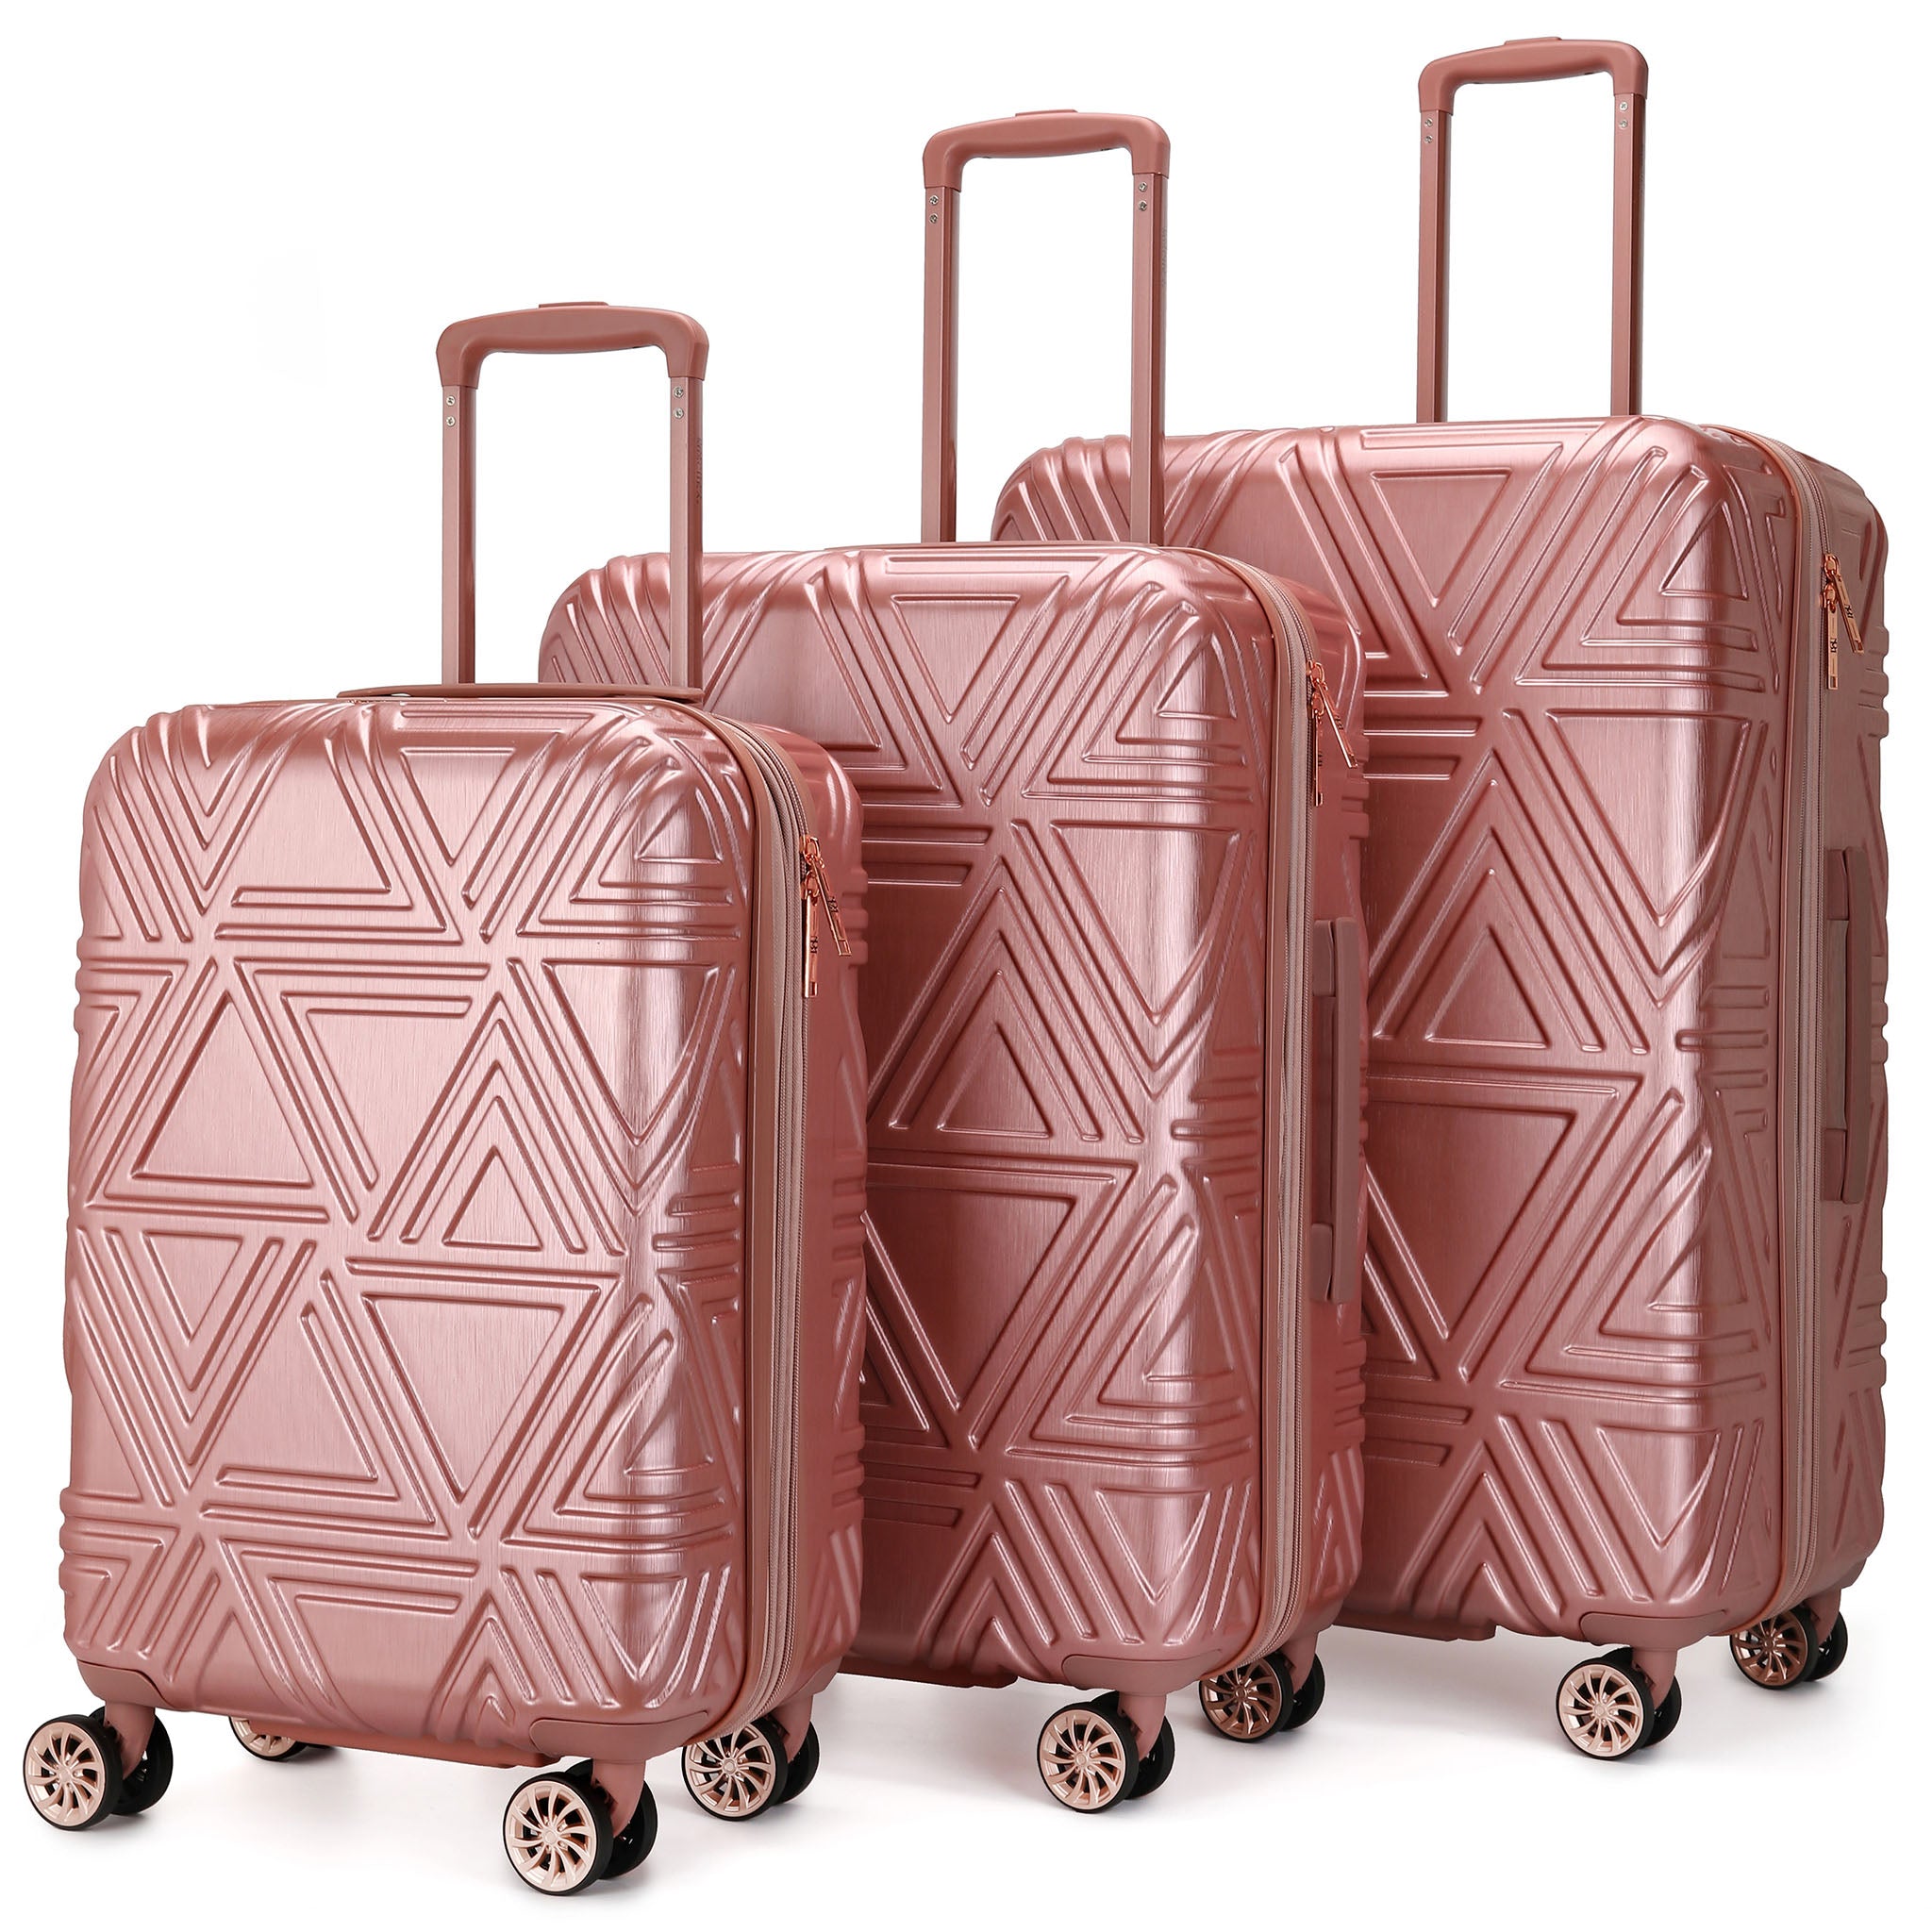 Badgley Mischka Essence 3 Piece Expandable Luggage Set - Tortoise